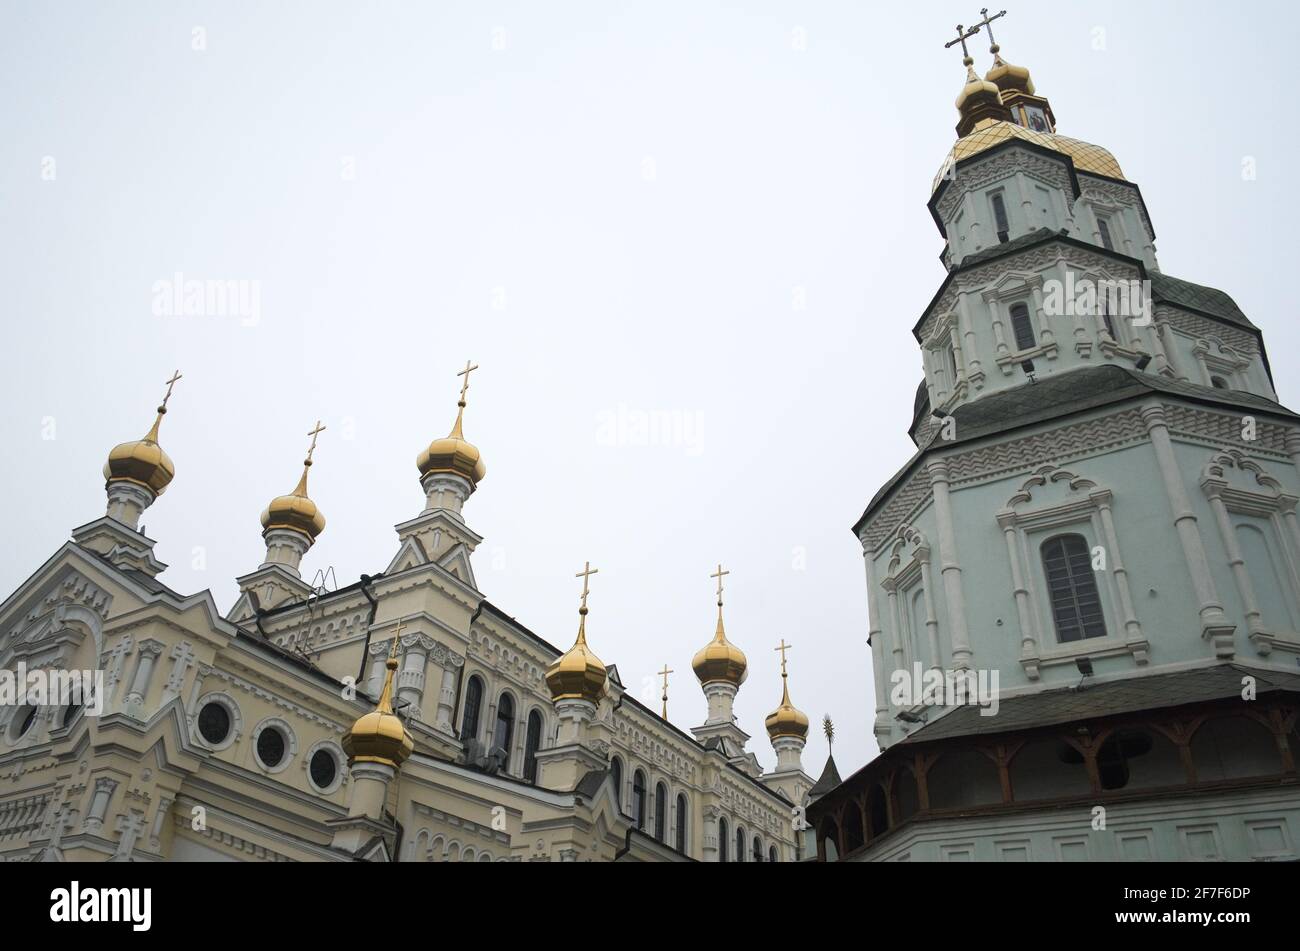 Monastère chrétien 17 siècle à Kharkiv, Ukraine. Église orthodoxe aux dômes dorés. Célèbre centre religieux dans l'est de l'Ukraine. Banque D'Images